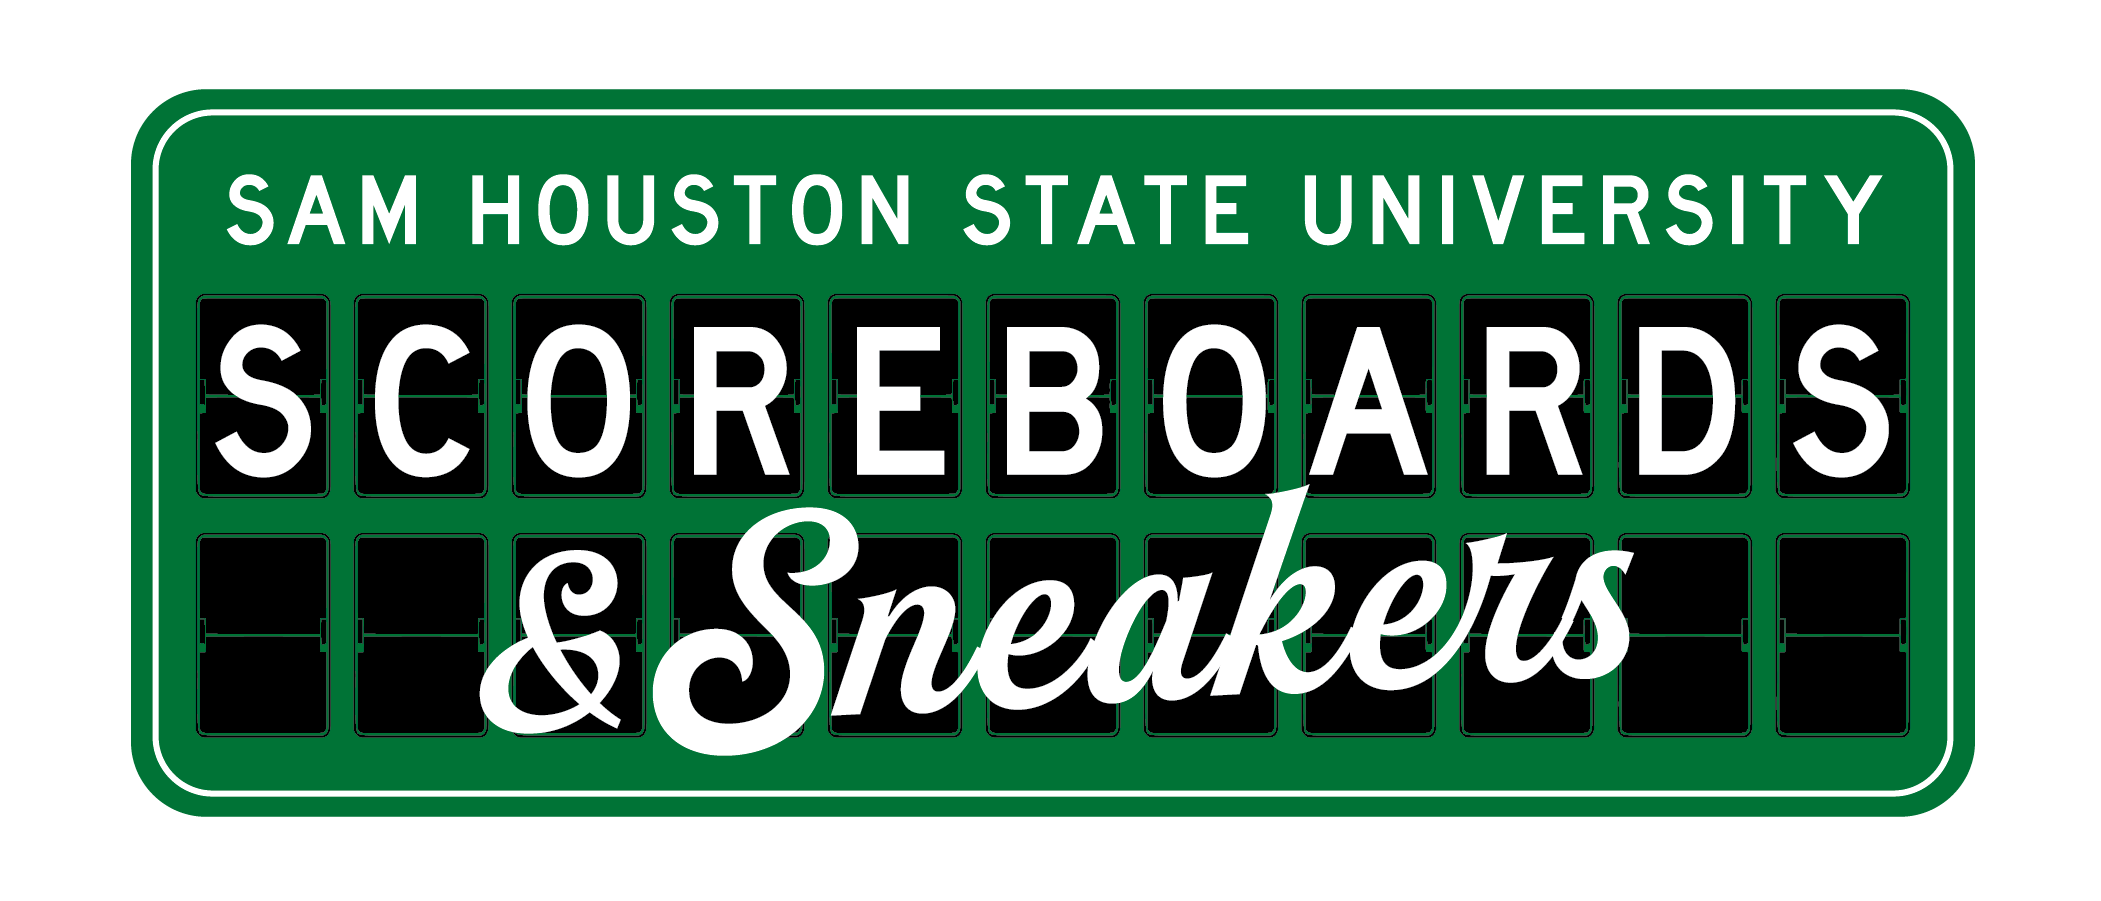 SHSU_ScoreboardsSneakers